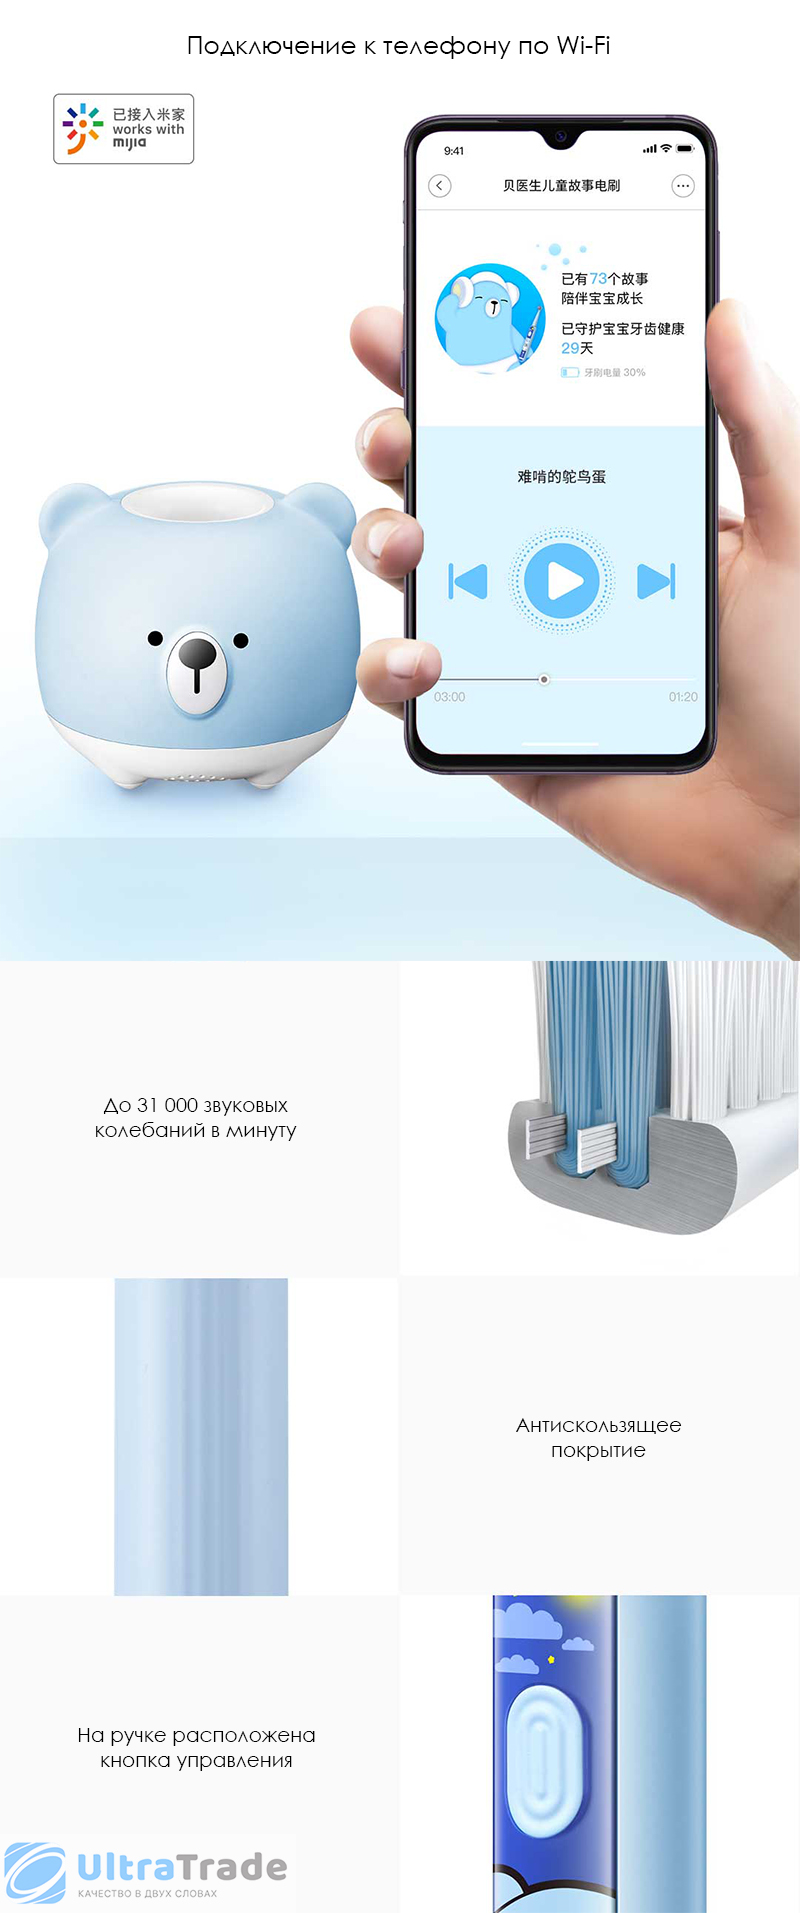 Электрическая детская зубная щетка Xiaomi DR.BEI Kids Sonic Electric Toothbrush K5